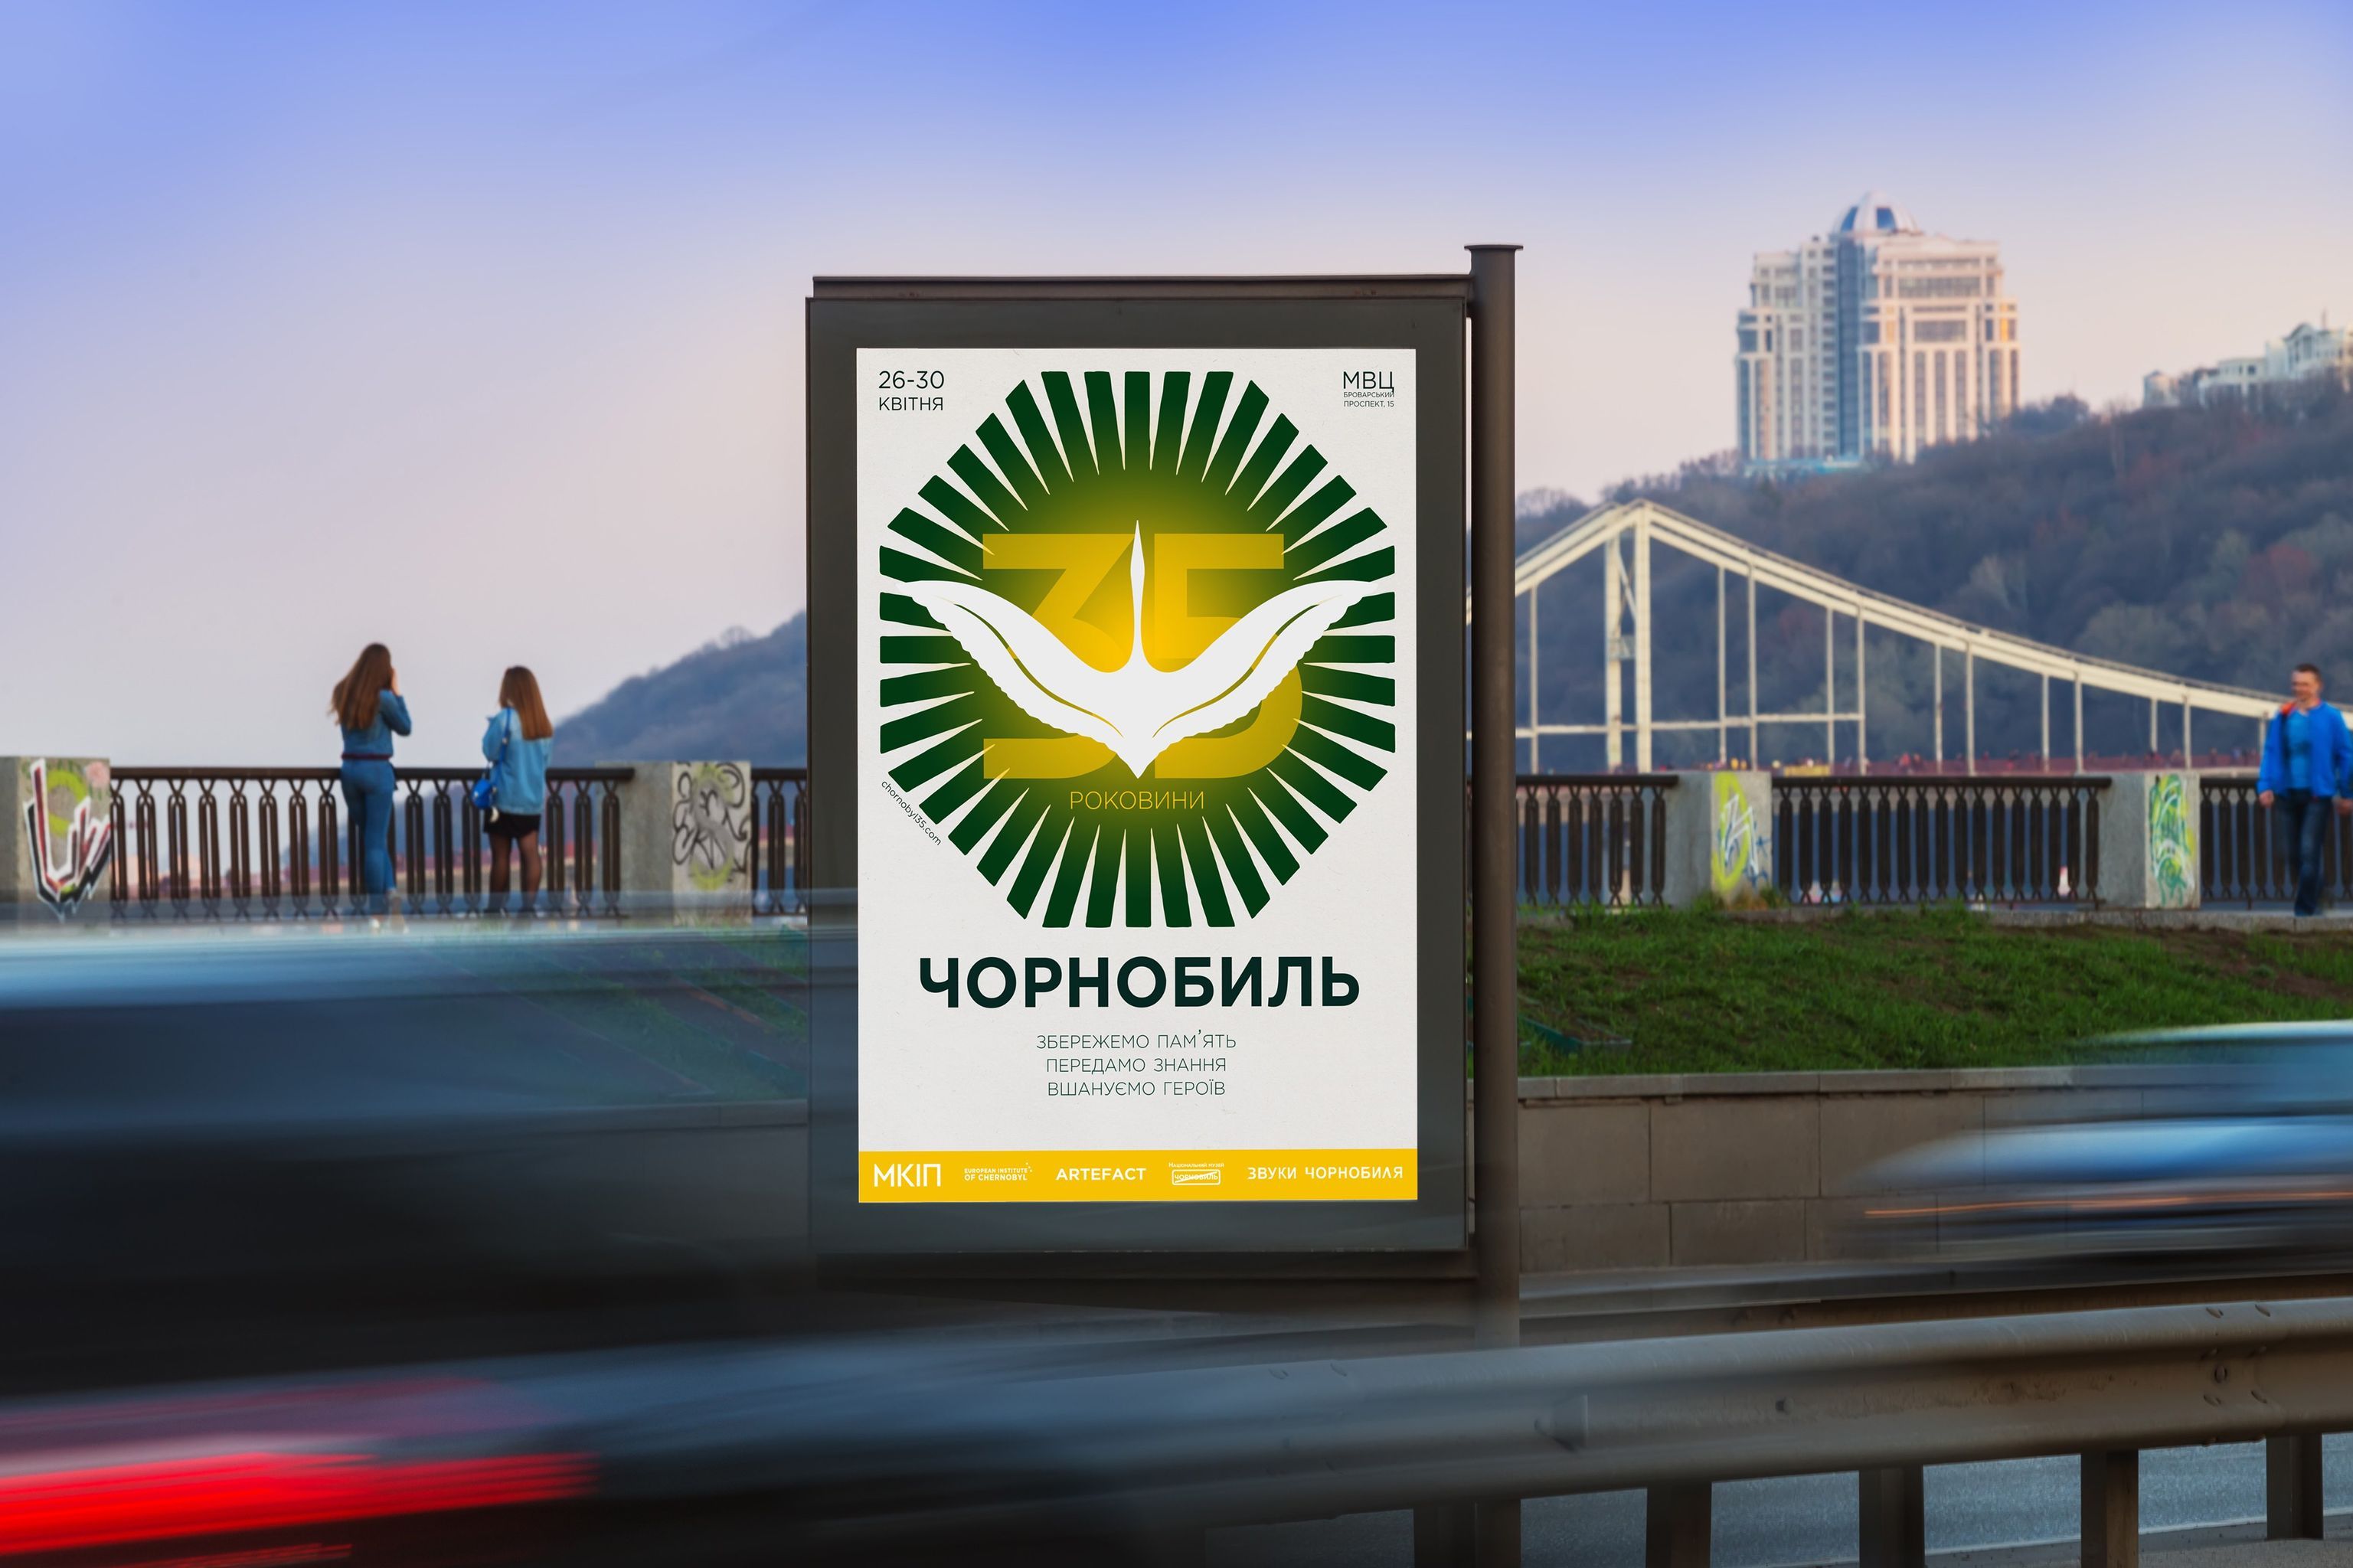 До 35-ої річниці аварії на ЧАЕС в Україні створили спеціальний сайт